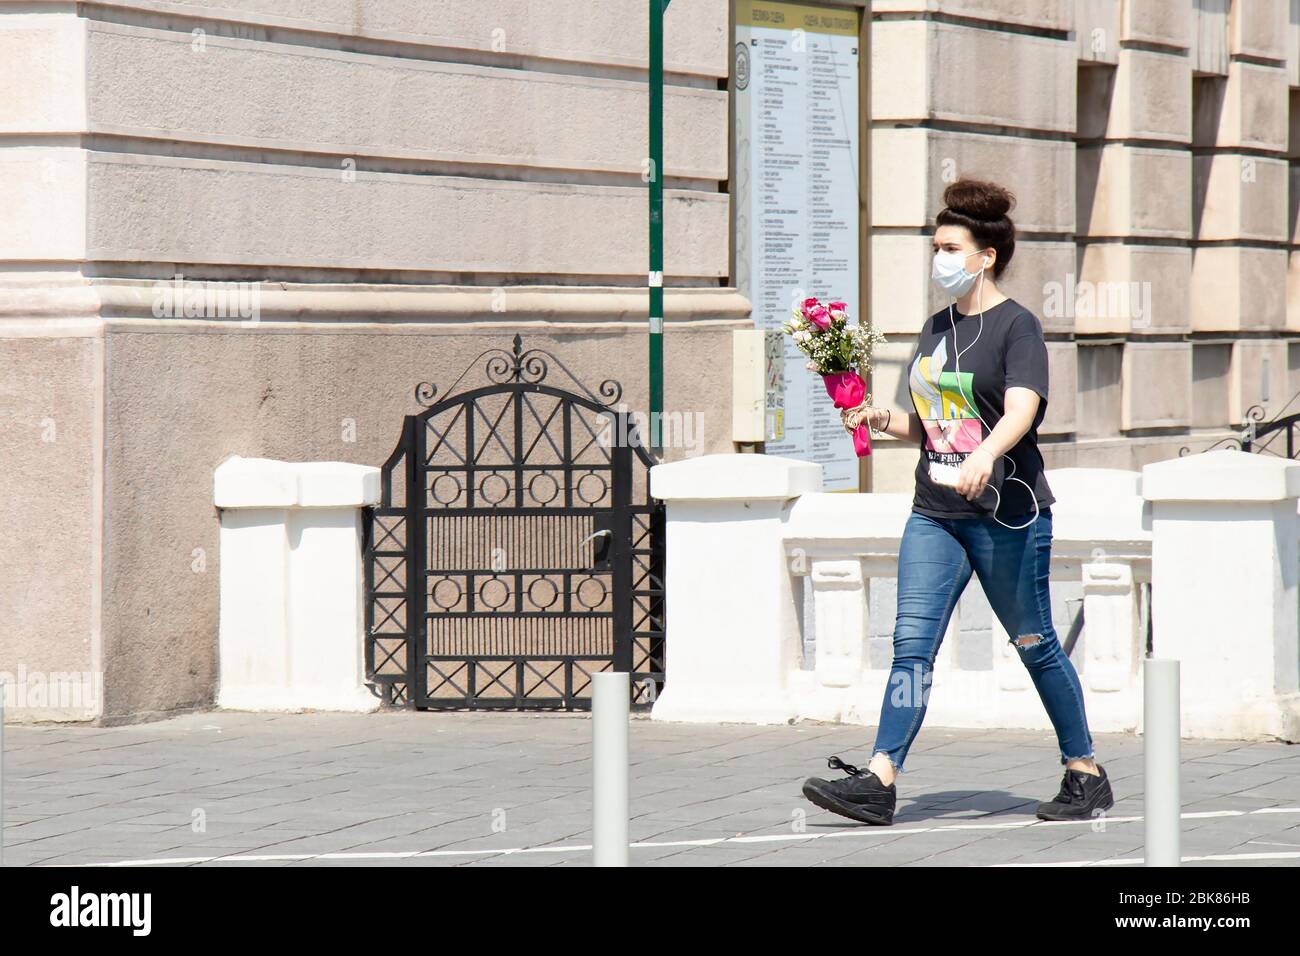 Belgrade, Serbie - 24 avril 2020: Une adolescente portant un masque de visage marchant seule rue de ville par un jour ensoleillé tout en tenant un bouquet de roses dans ses mains Banque D'Images